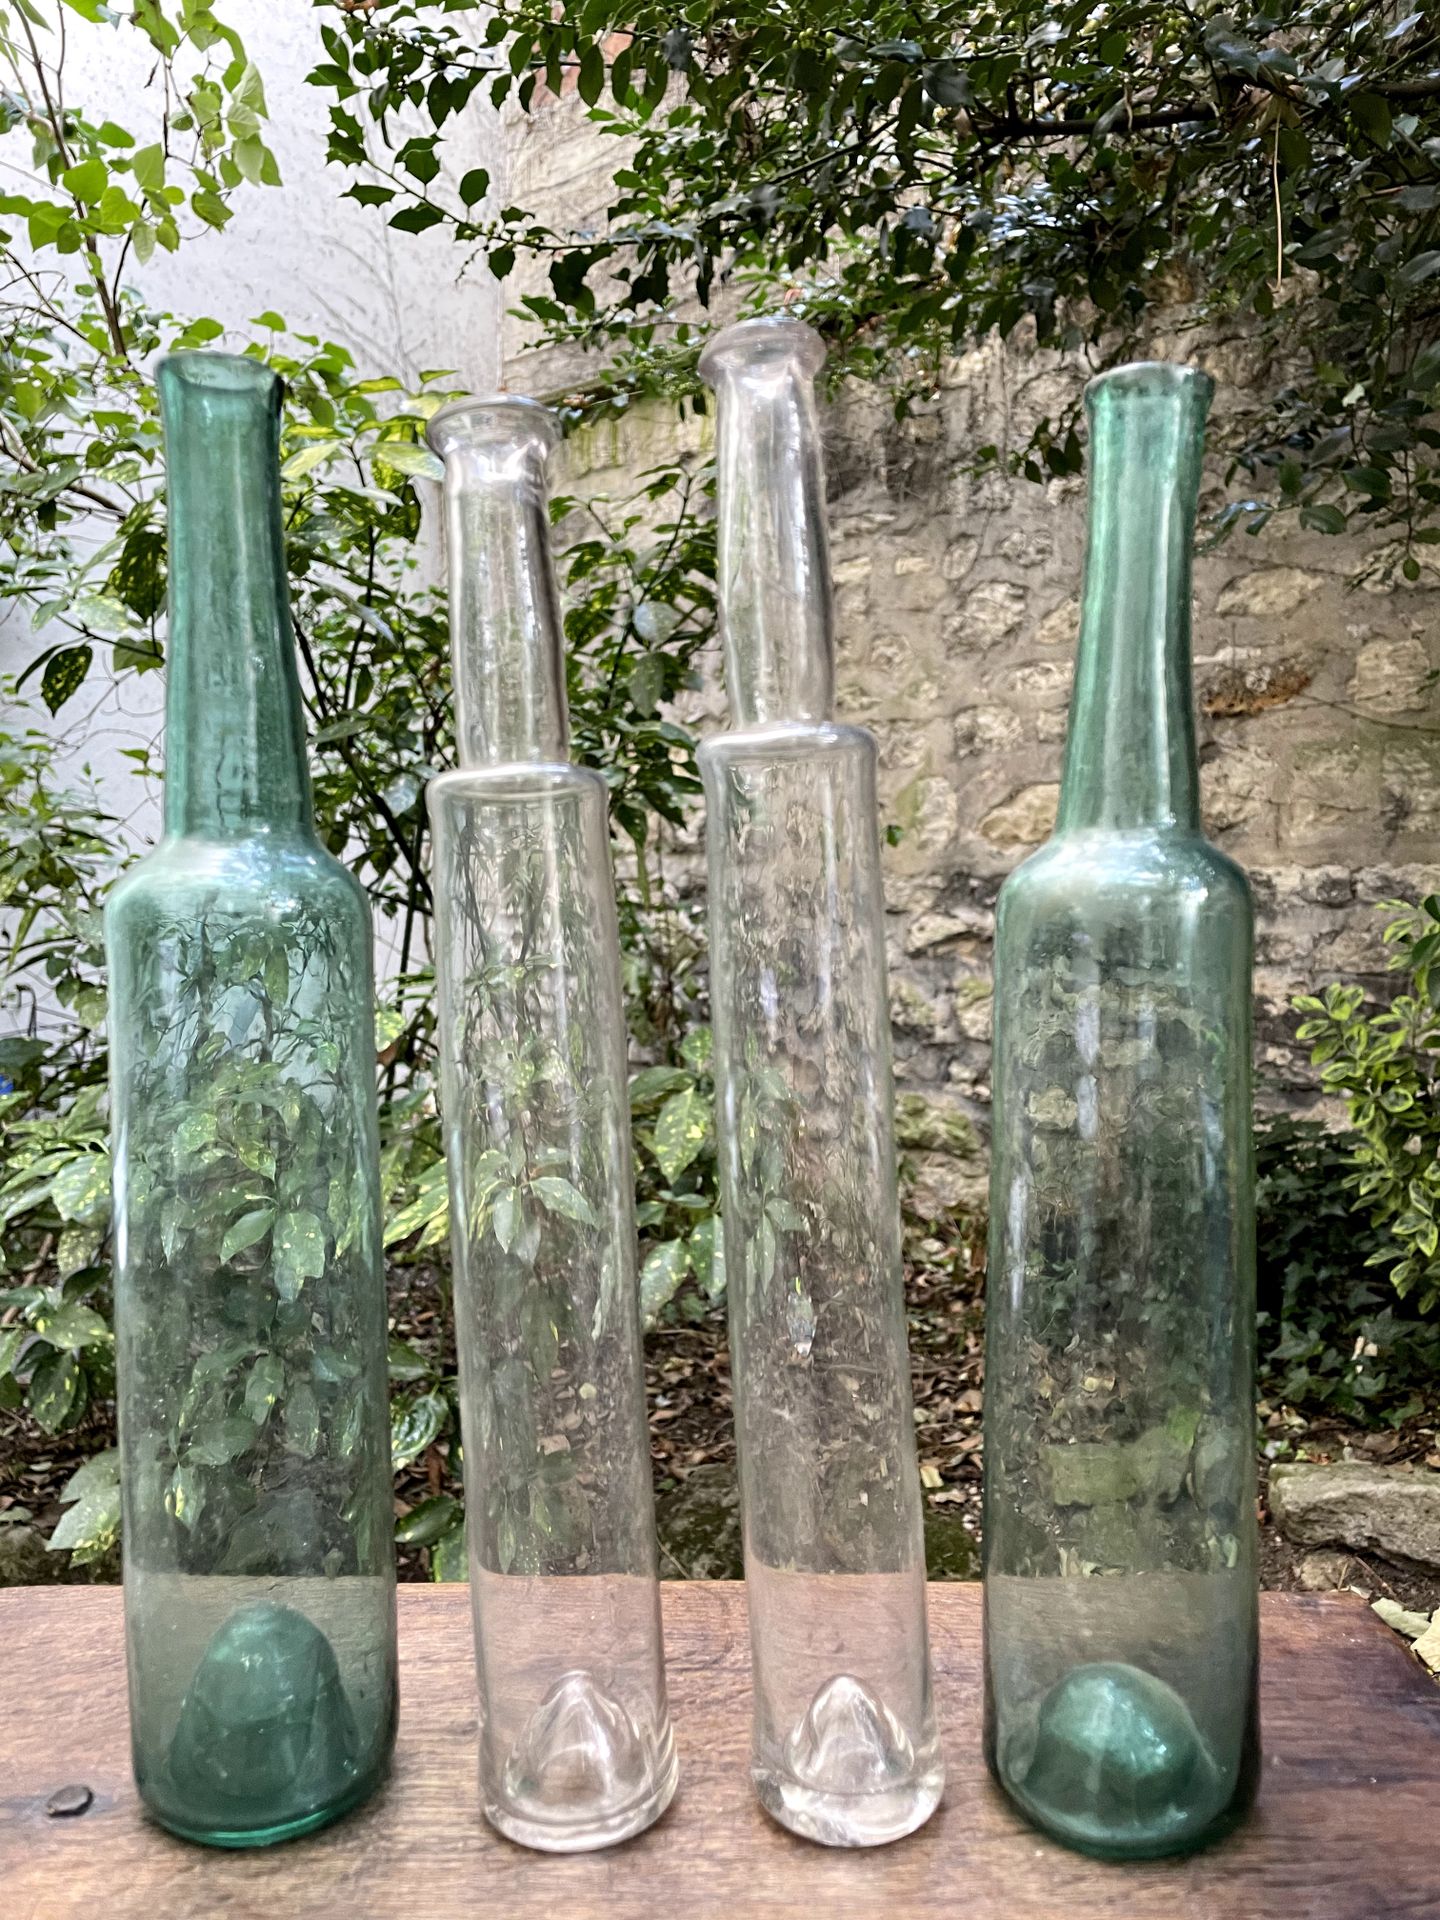 Null Vier Glasflaschen, ein Paar blau-grün gefärbt.

Ende des 18. Jahrhunderts

&hellip;